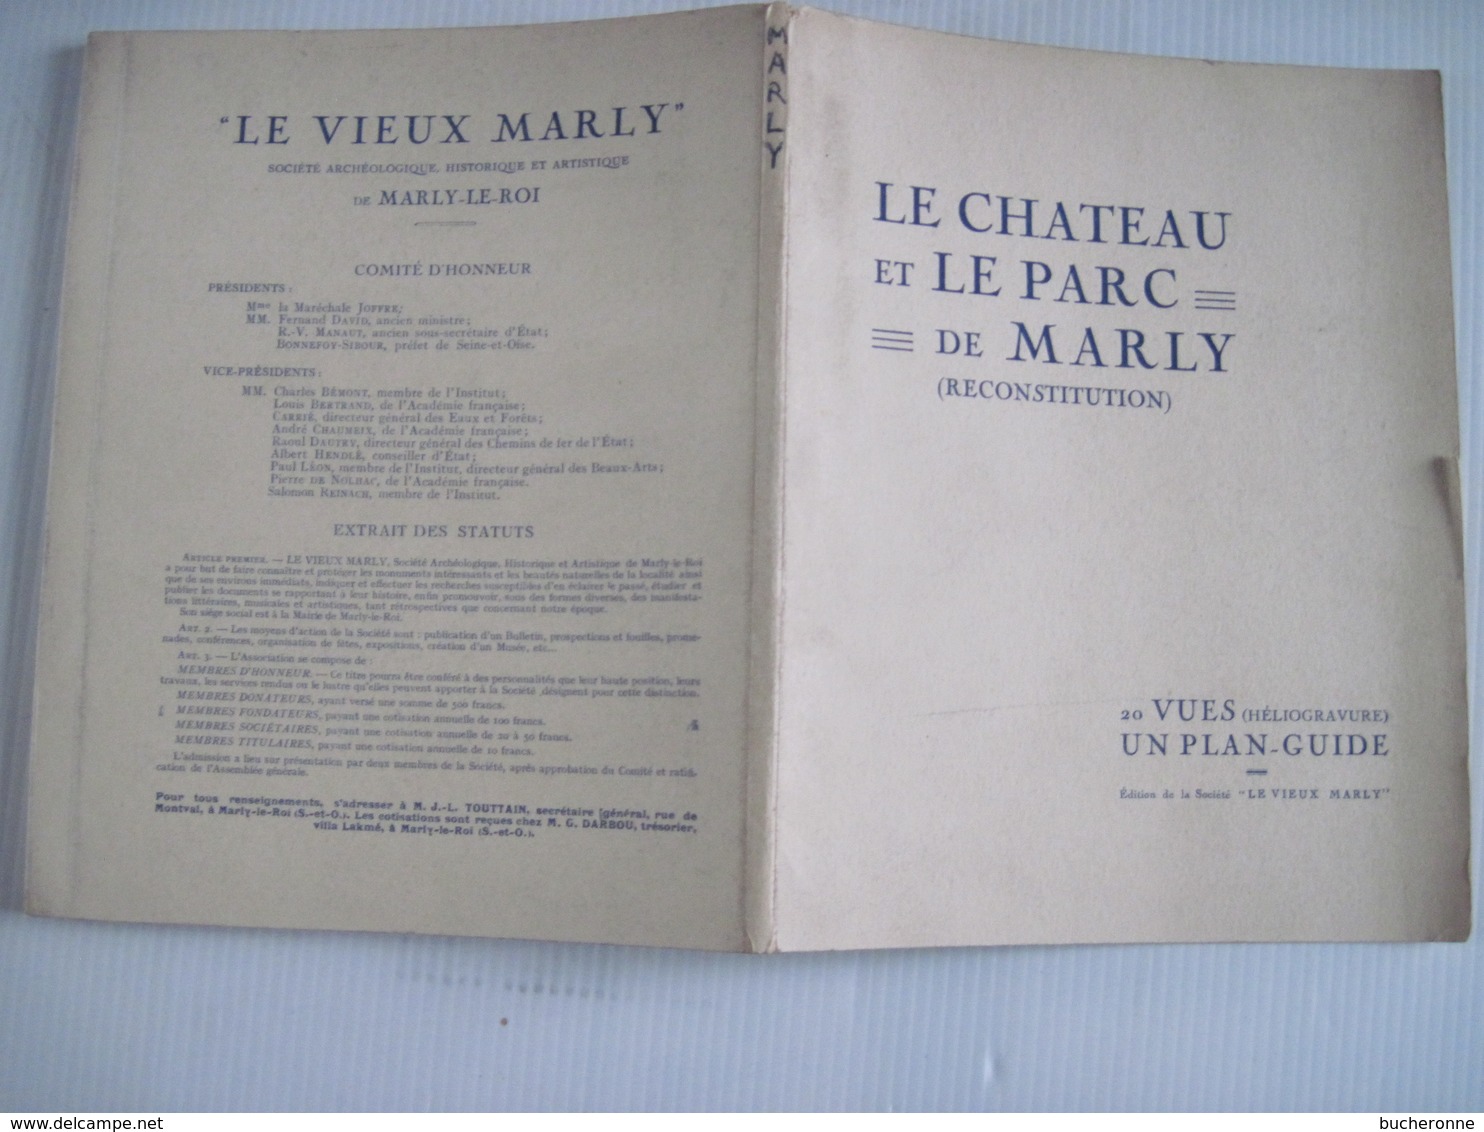 Le Chateau Et Le Parc De Marly (Reconstitution) 20 Vues (Héliogravures) Un Plan Guide - Ile-de-France